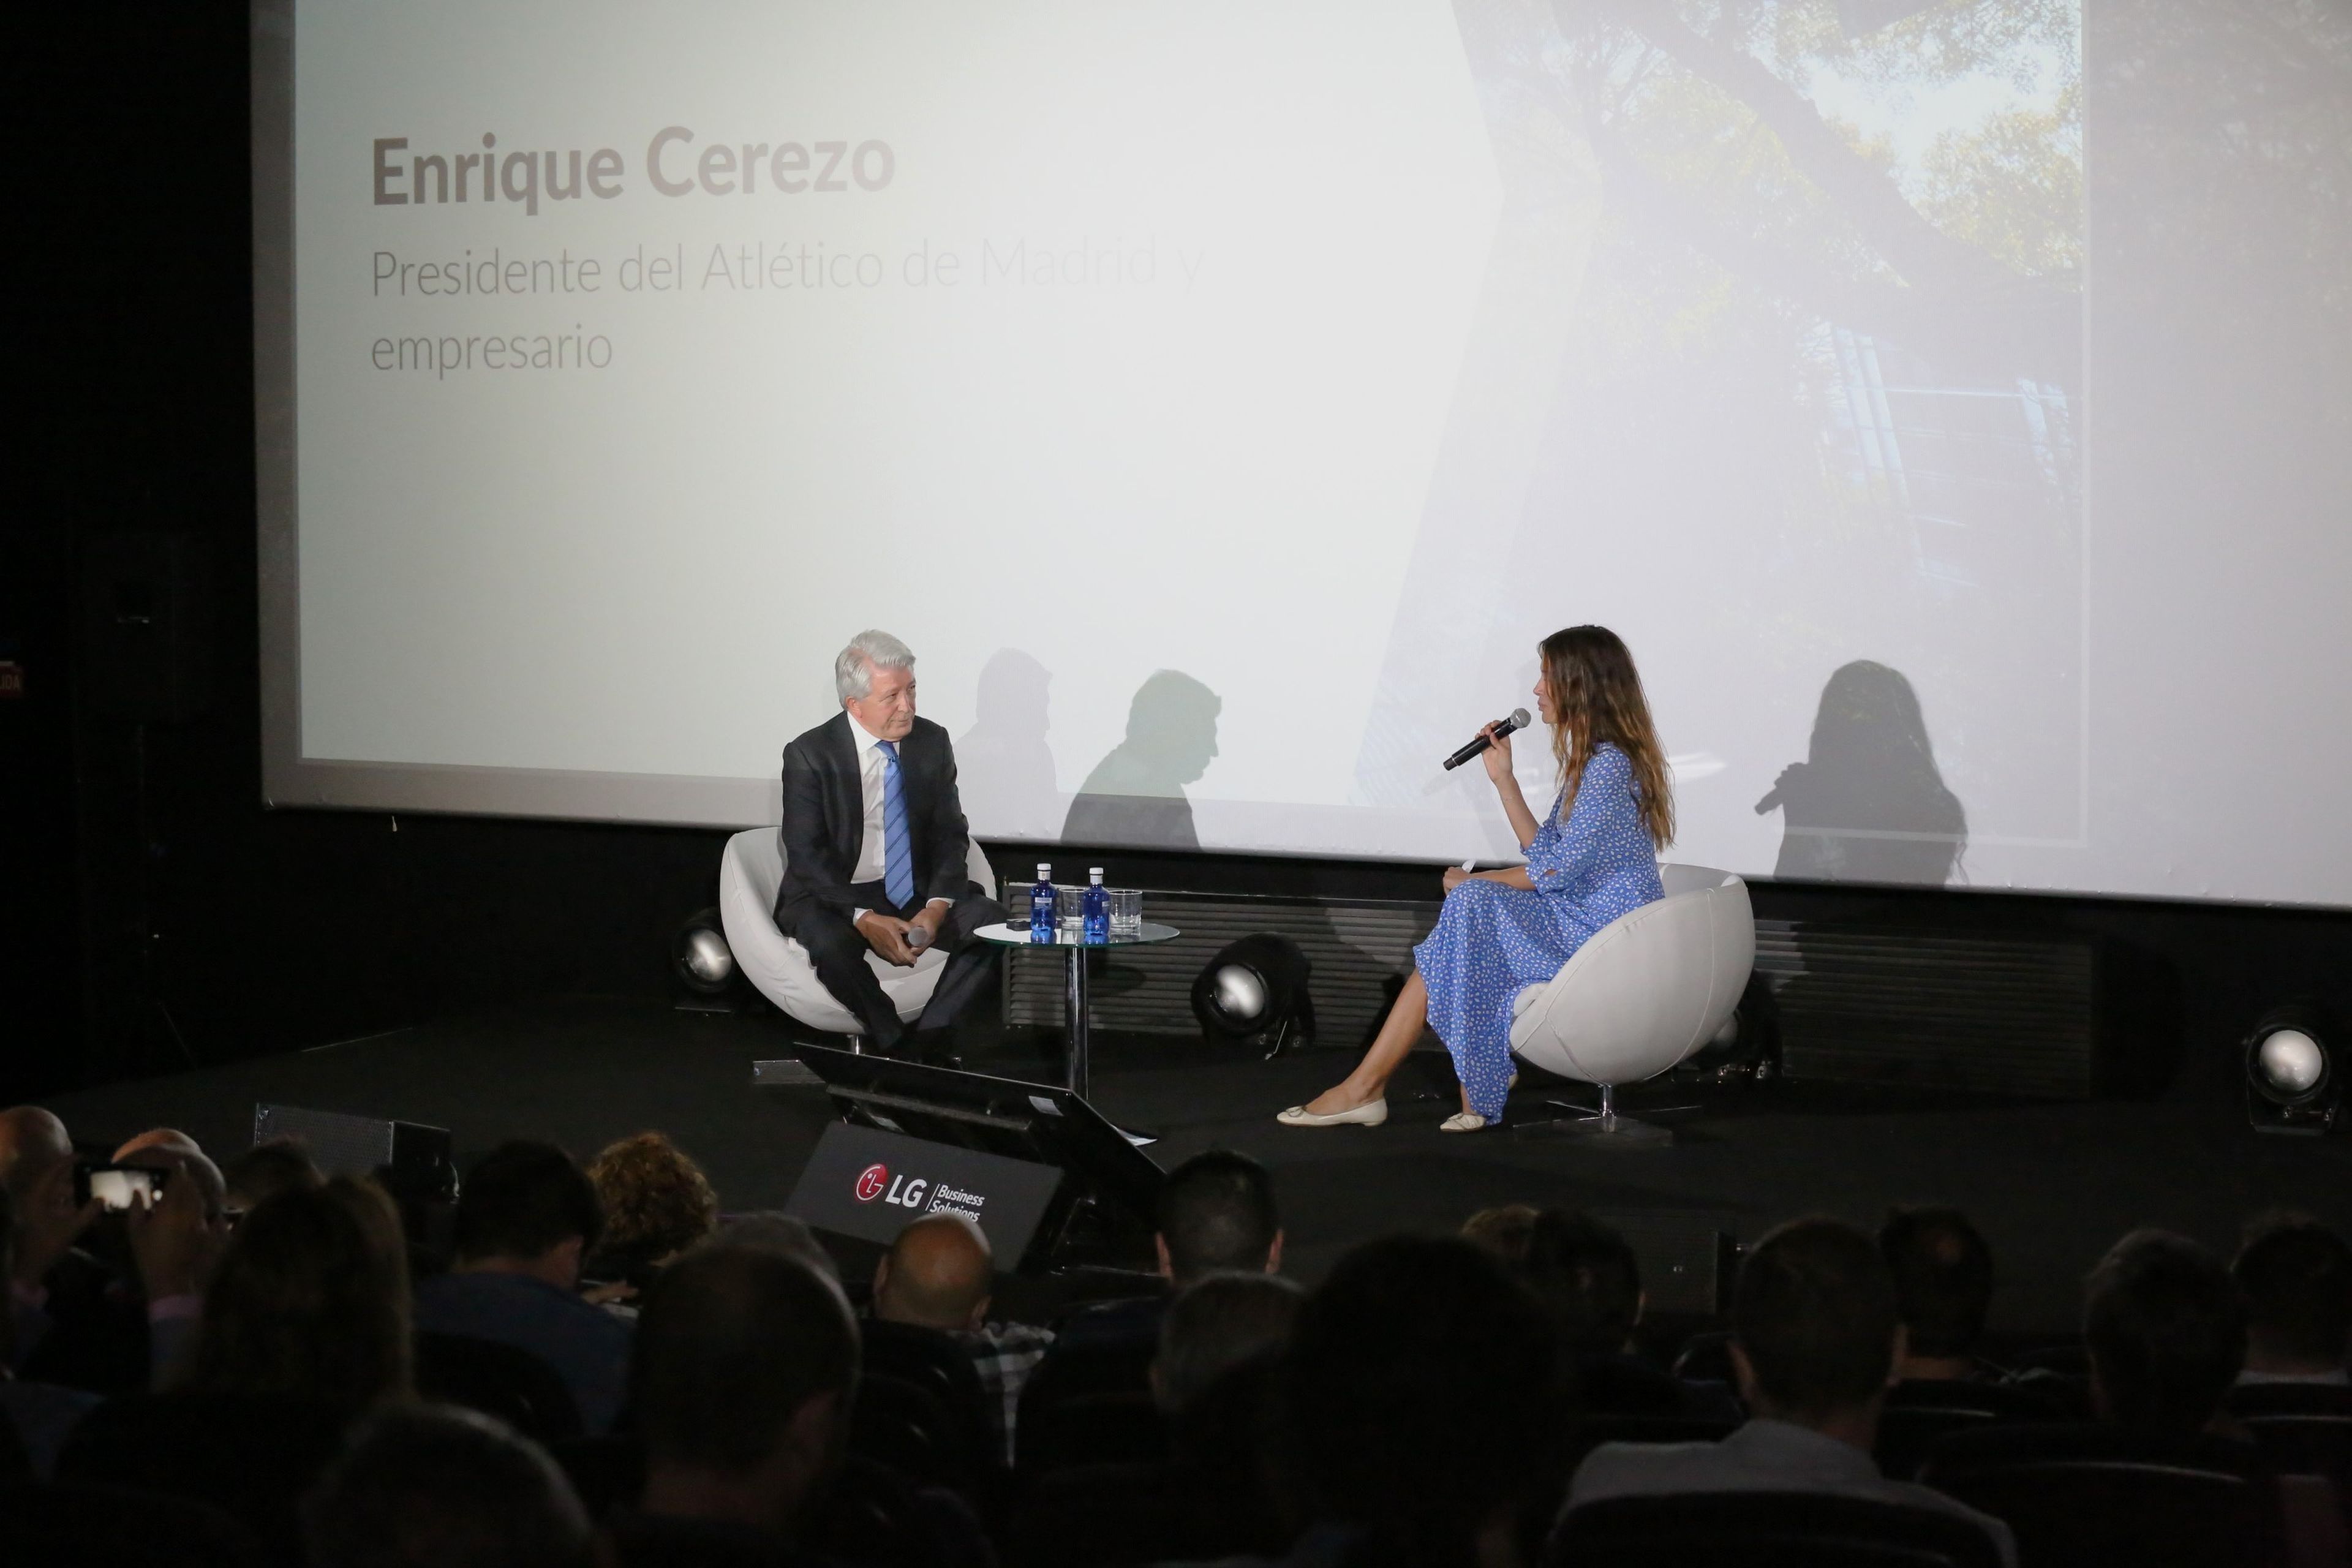 Entrevista a Enrique Cerezo, presidente del Club Atlético de Madrid, del que LG es proveedor tecnológico. | Créditos: Álvaro García / LG Electronics